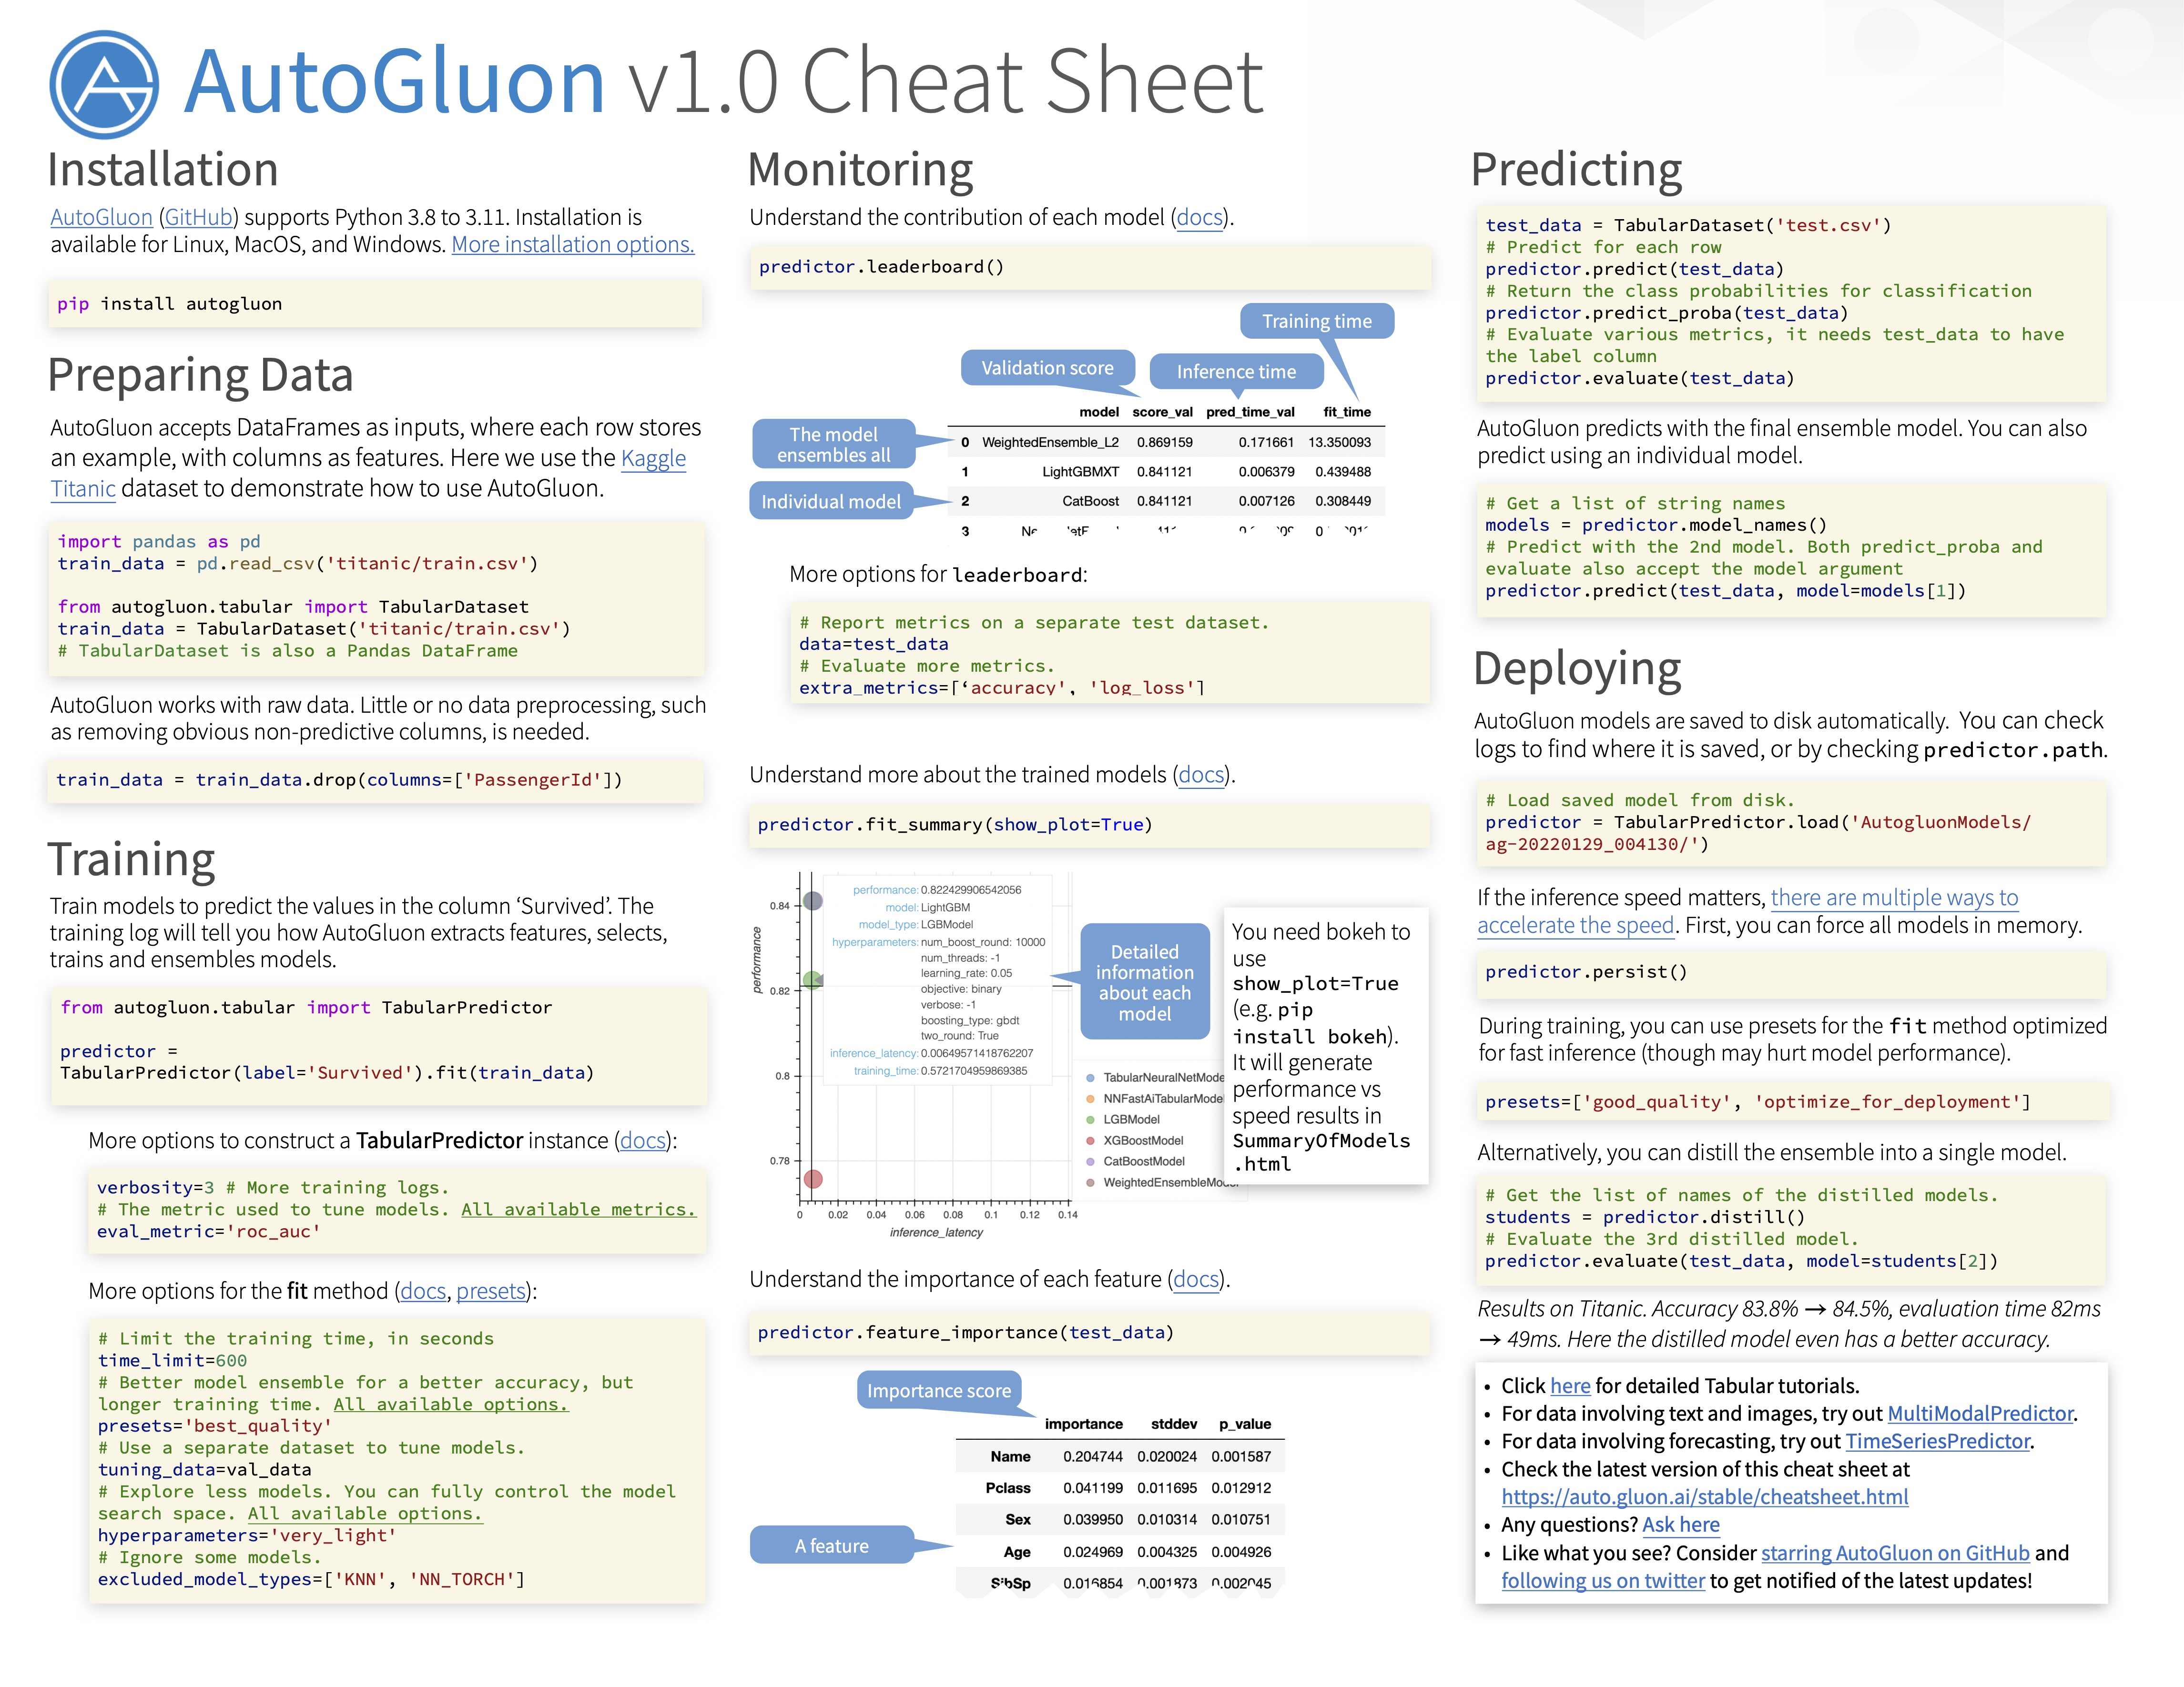 Cheat Sheet - AutoGluon 1.0.0 documentation